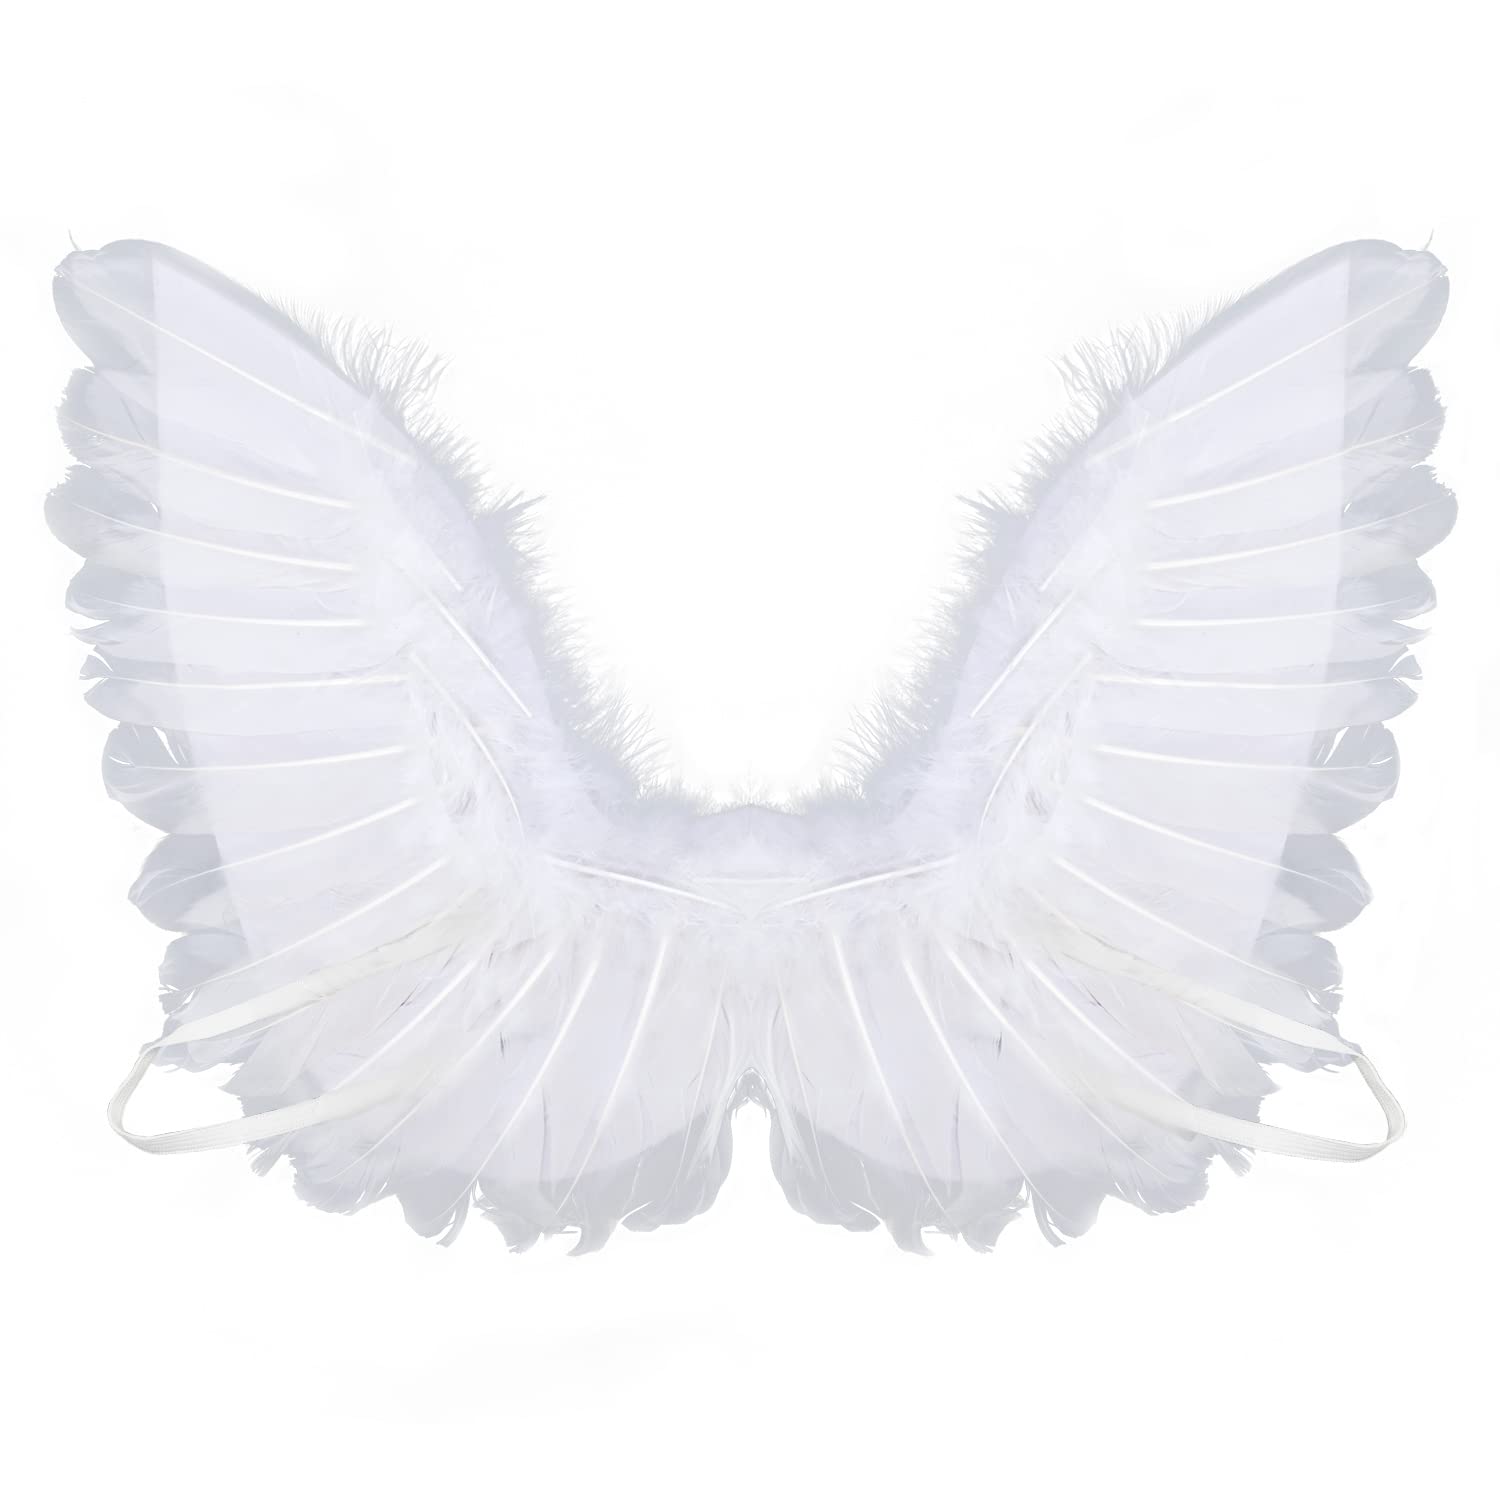 BLUETOP Angel Wings Cosplay Wings Huge Angel Wings For Teenagers Adult Photoshoot